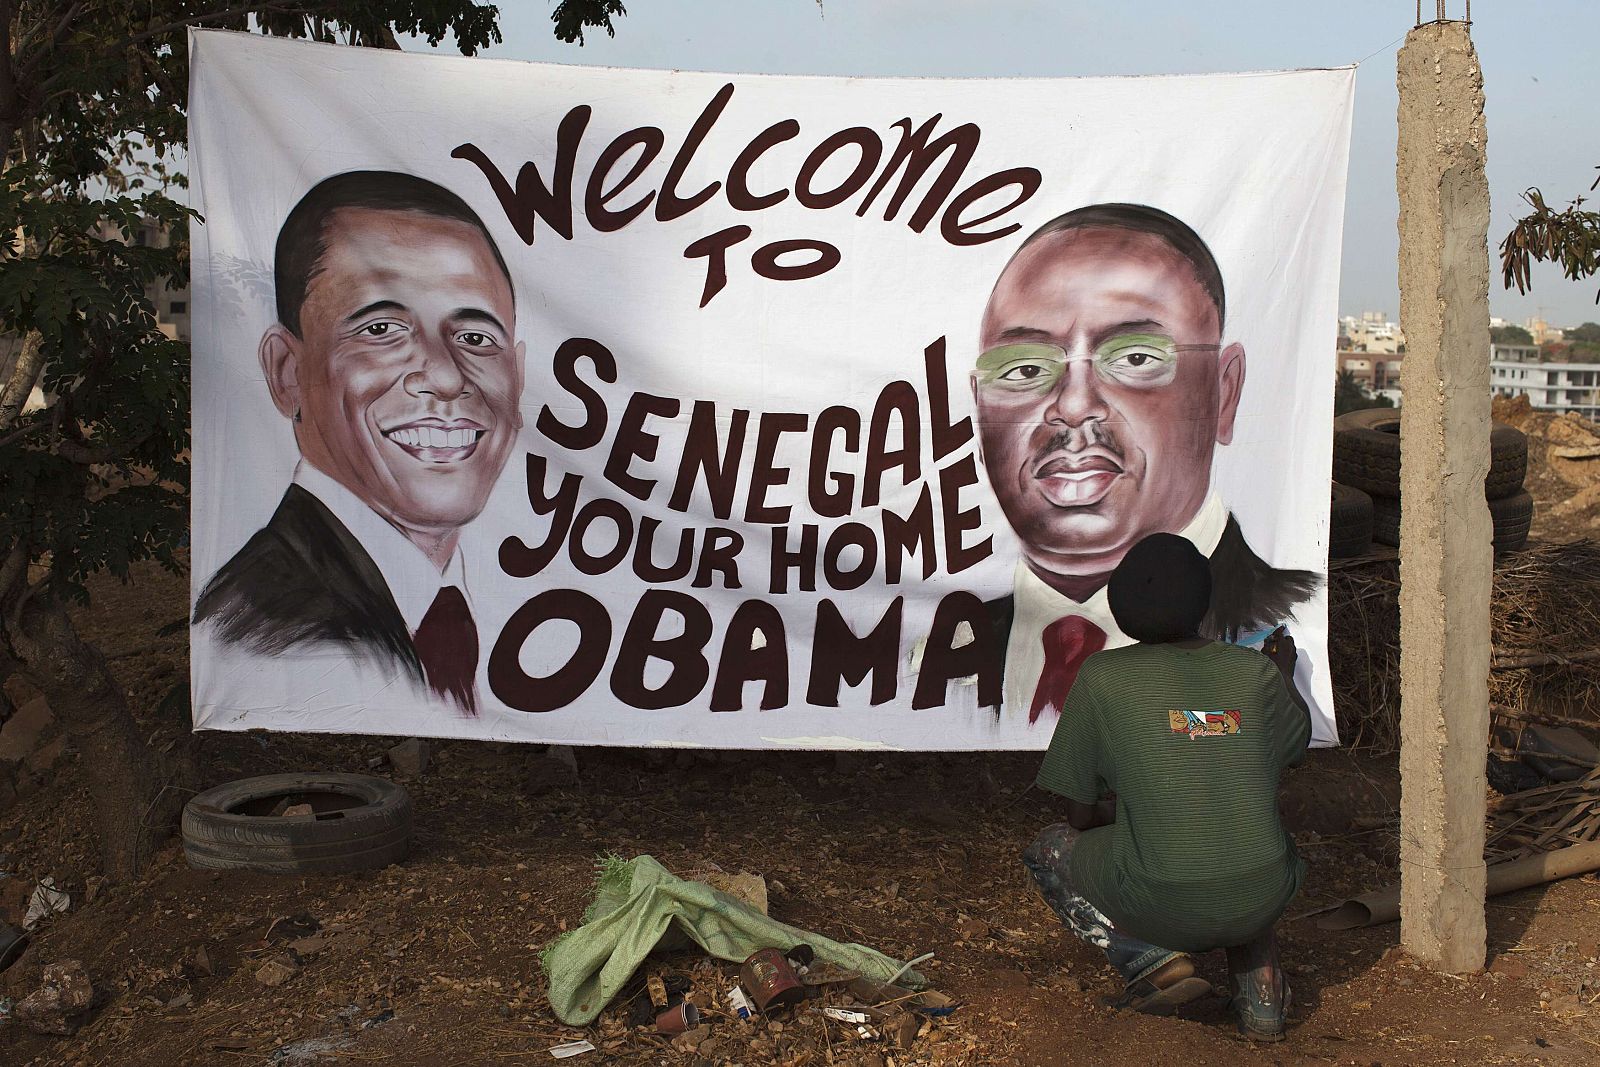 Ouzin, artista plástico, pone el toque final en Dakar a un cartel que da la bienvenida a Obama a Senegal